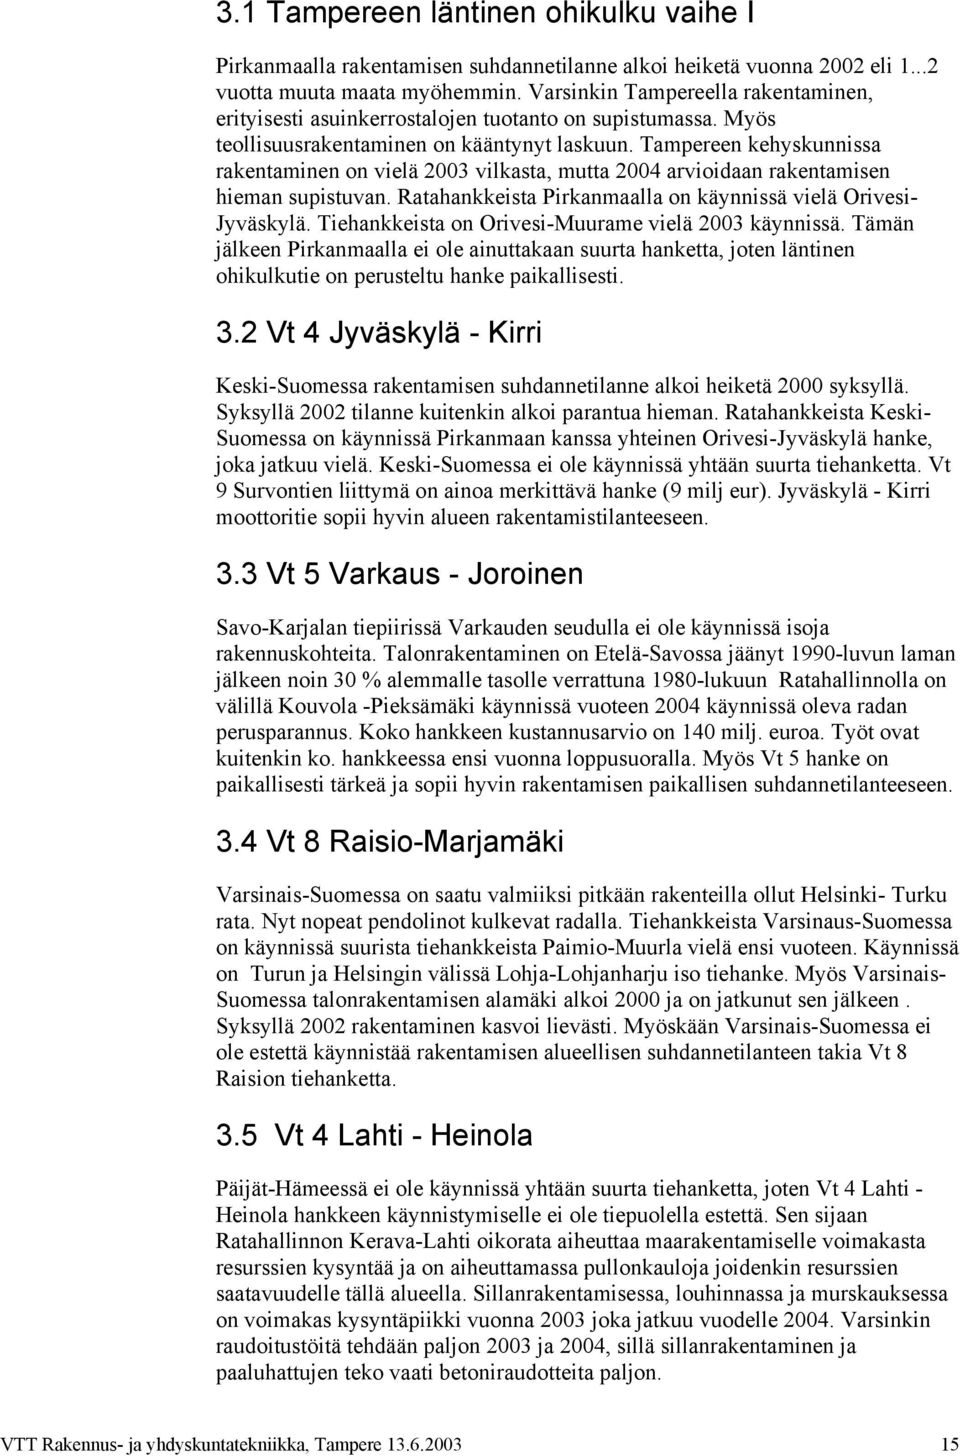 Tampereen kehyskunnissa rakentaminen on vielä 23 vilkasta, mutta 24 arvioidaan rakentamisen hieman supistuvan. Ratahankkeista Pirkanmaalla on käynnissä vielä Orivesi- Jyväskylä.